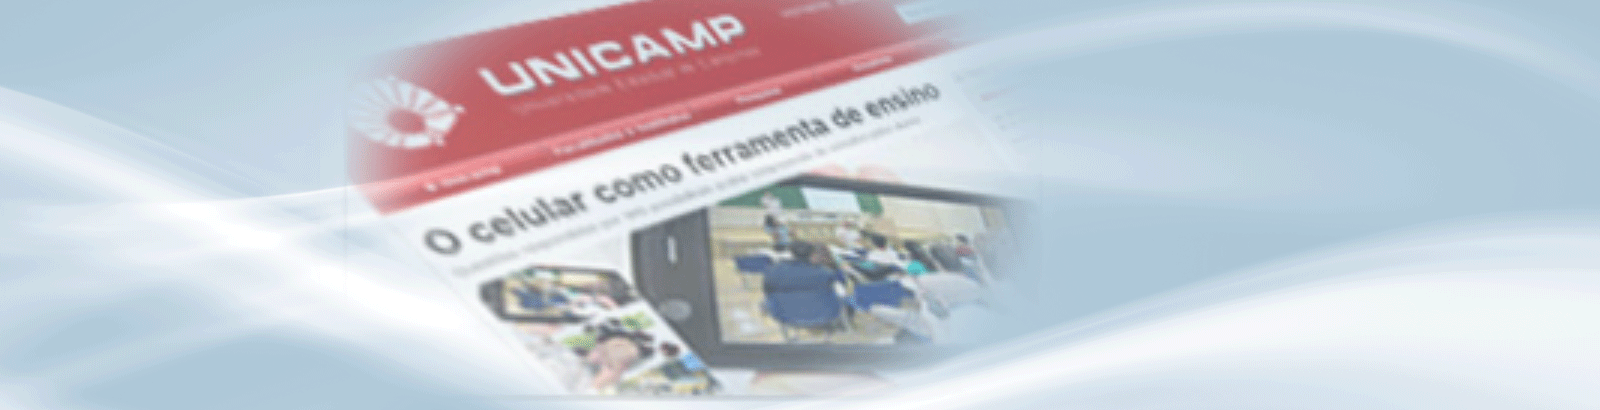 Novo Portal da Unicamp: modernização no visual e na infraestrutura computacional